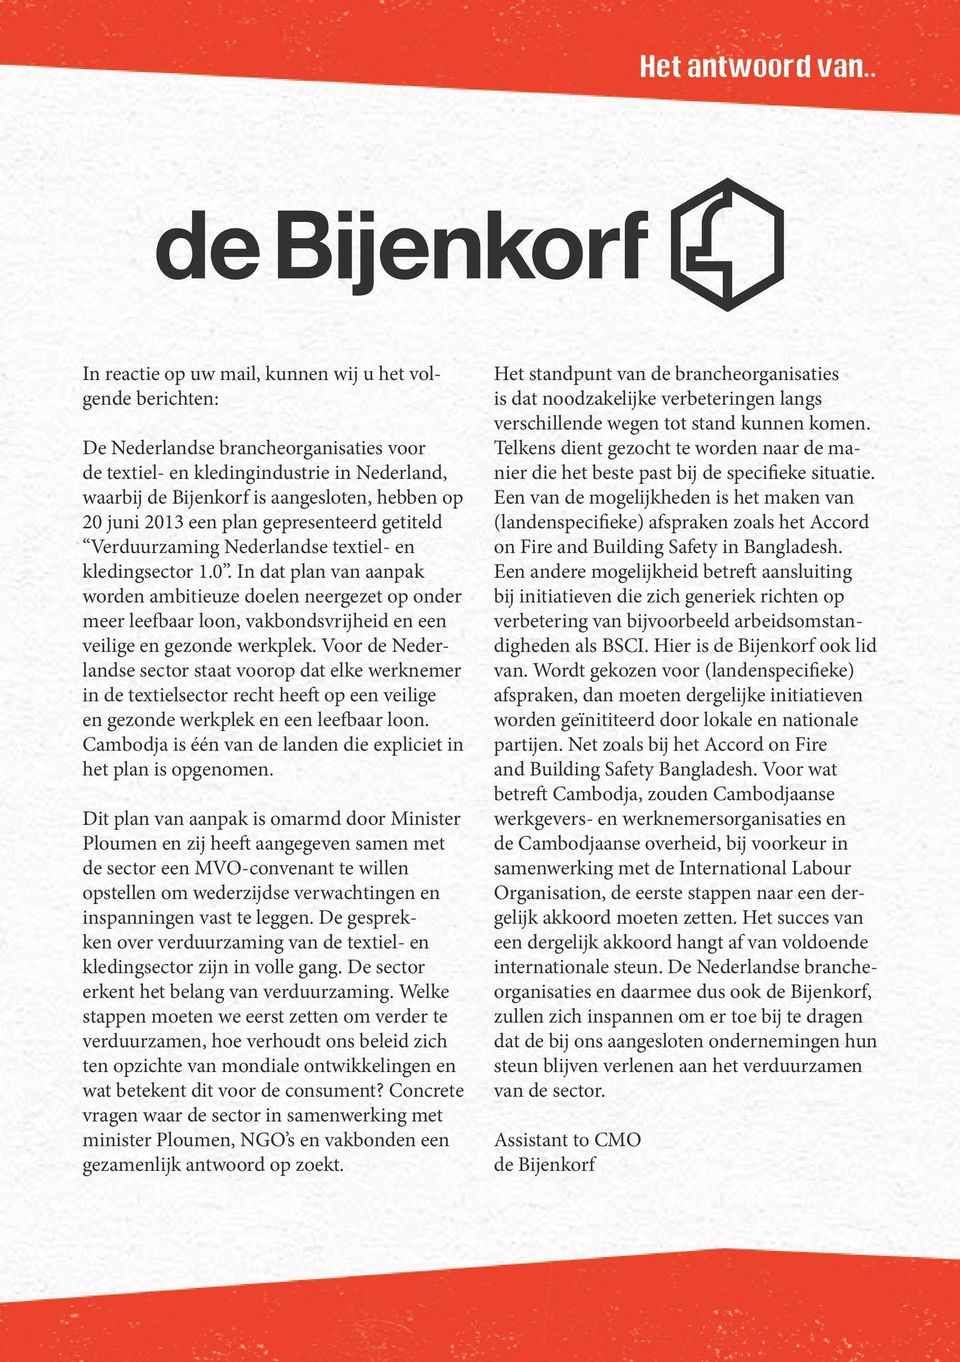 juni 2013 een plan gepresenteerd getiteld Verduurzaming Nederlandse textiel- en kledingsector 1.0. In dat plan van aanpak worden ambitieuze doelen neergezet op onder meer leefbaar loon, vakbondsvrijheid en een veilige en gezonde werkplek.